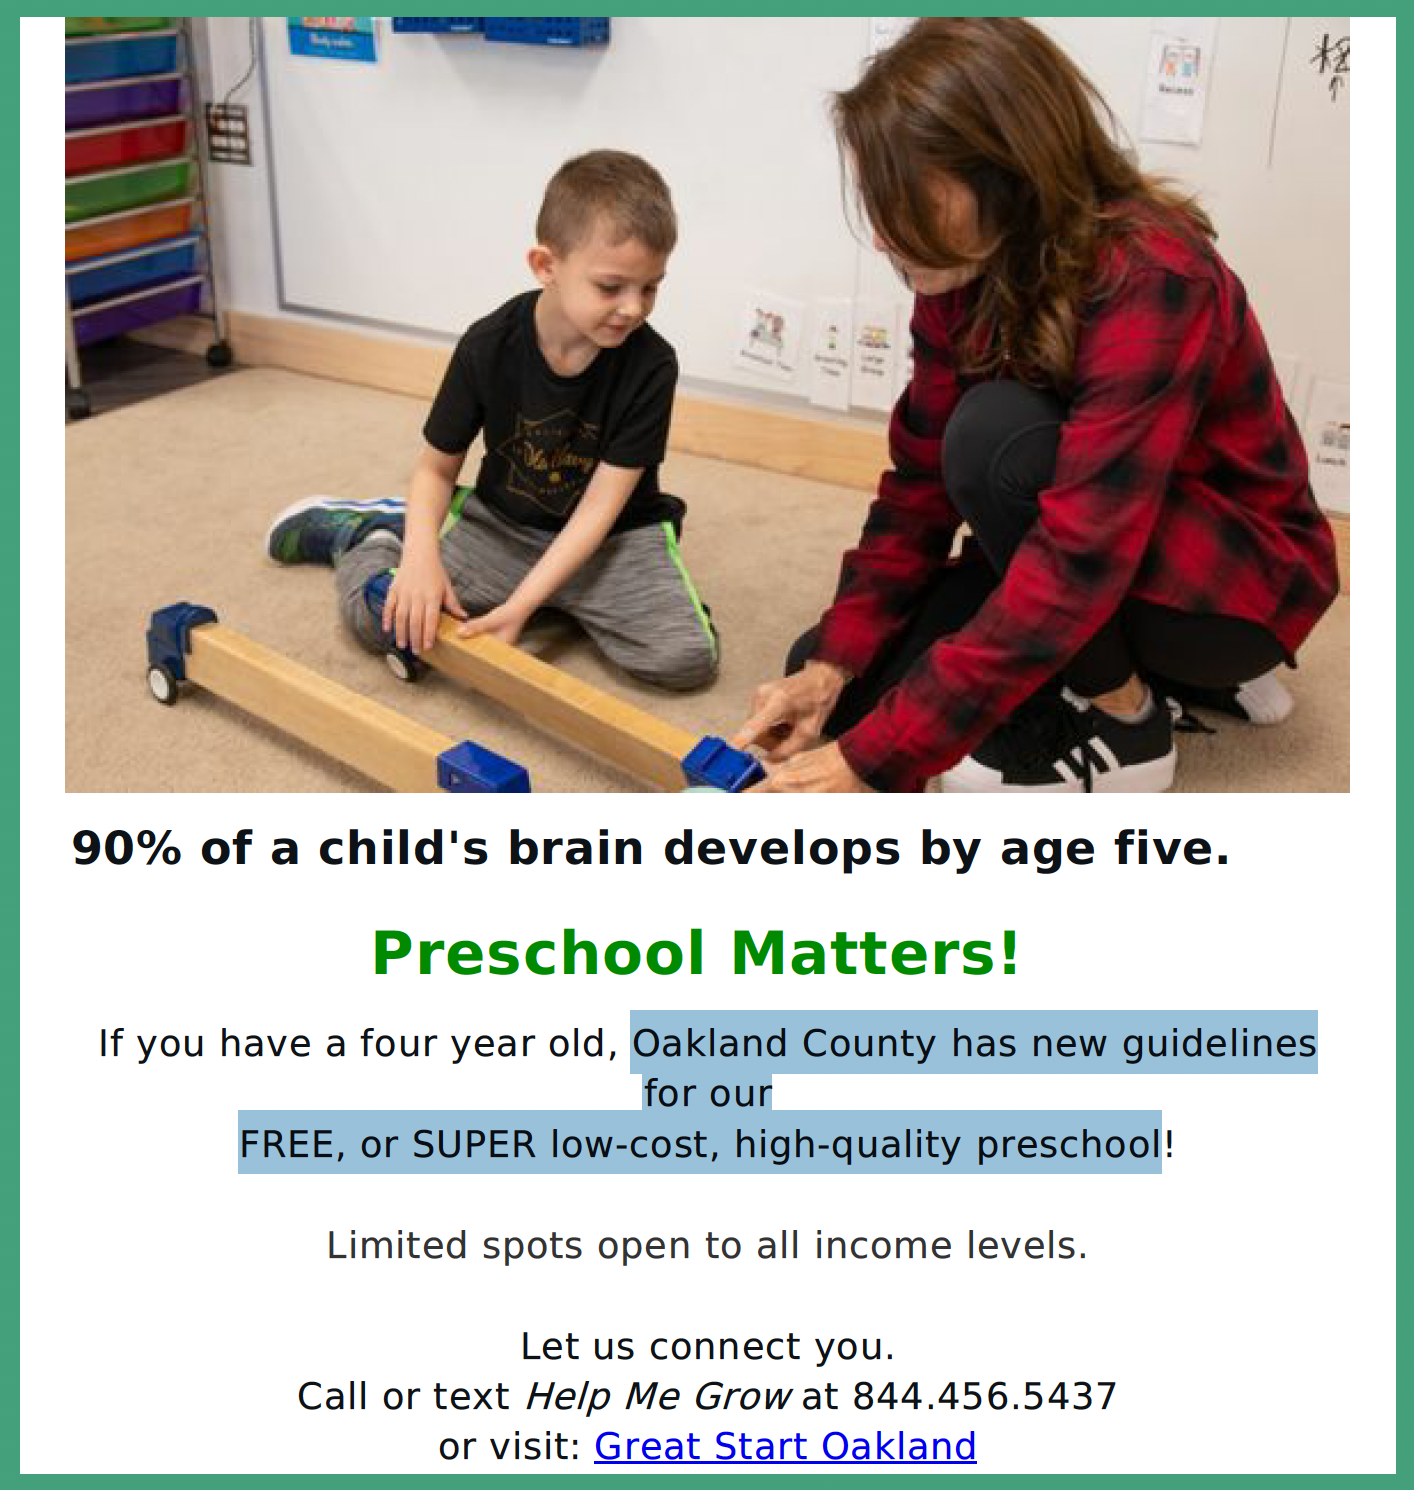 Preschool Matters flyer image